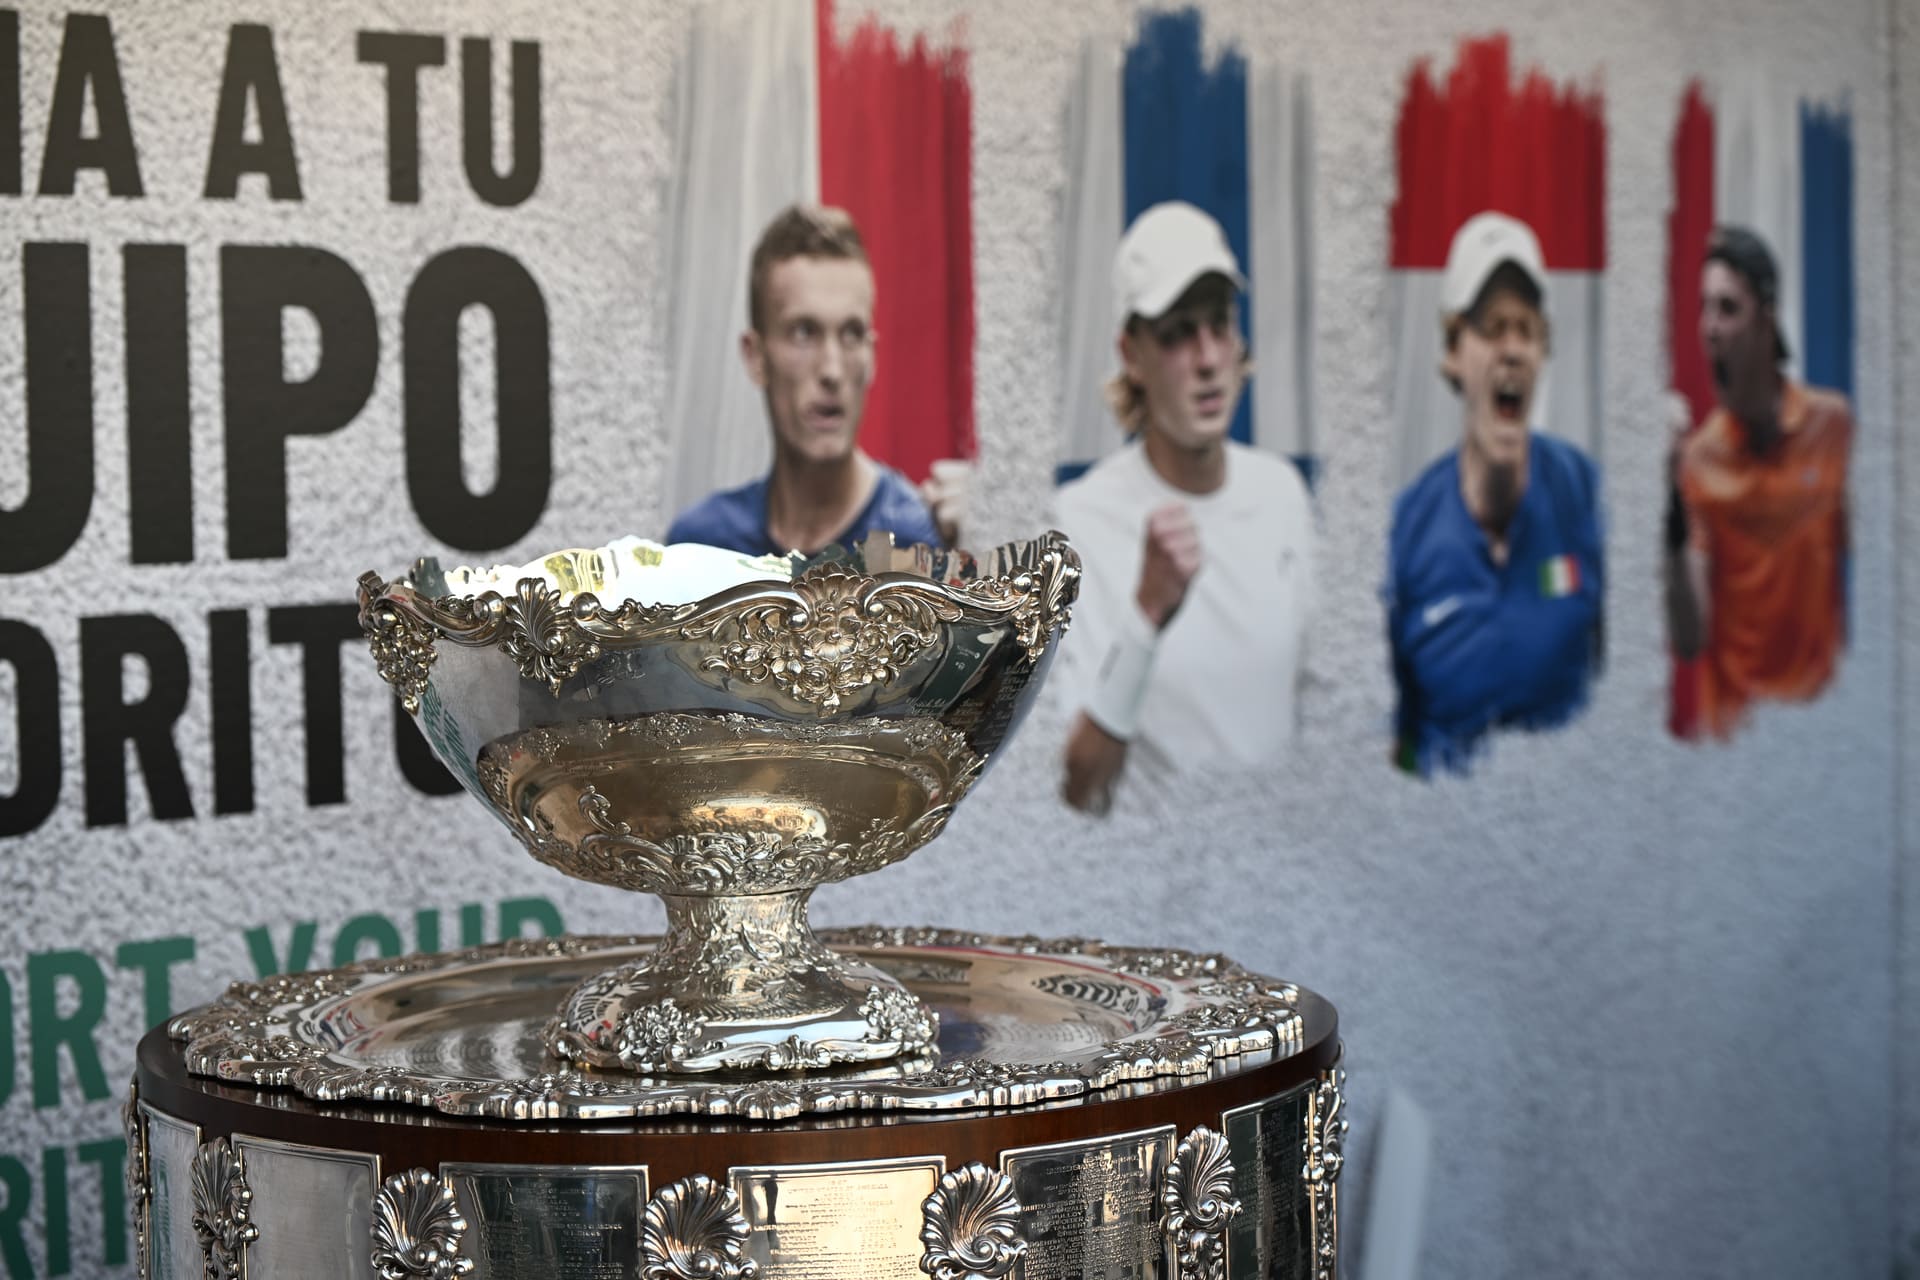 Torneio WTA 125 garantido em Portugal em 2024, Ténis